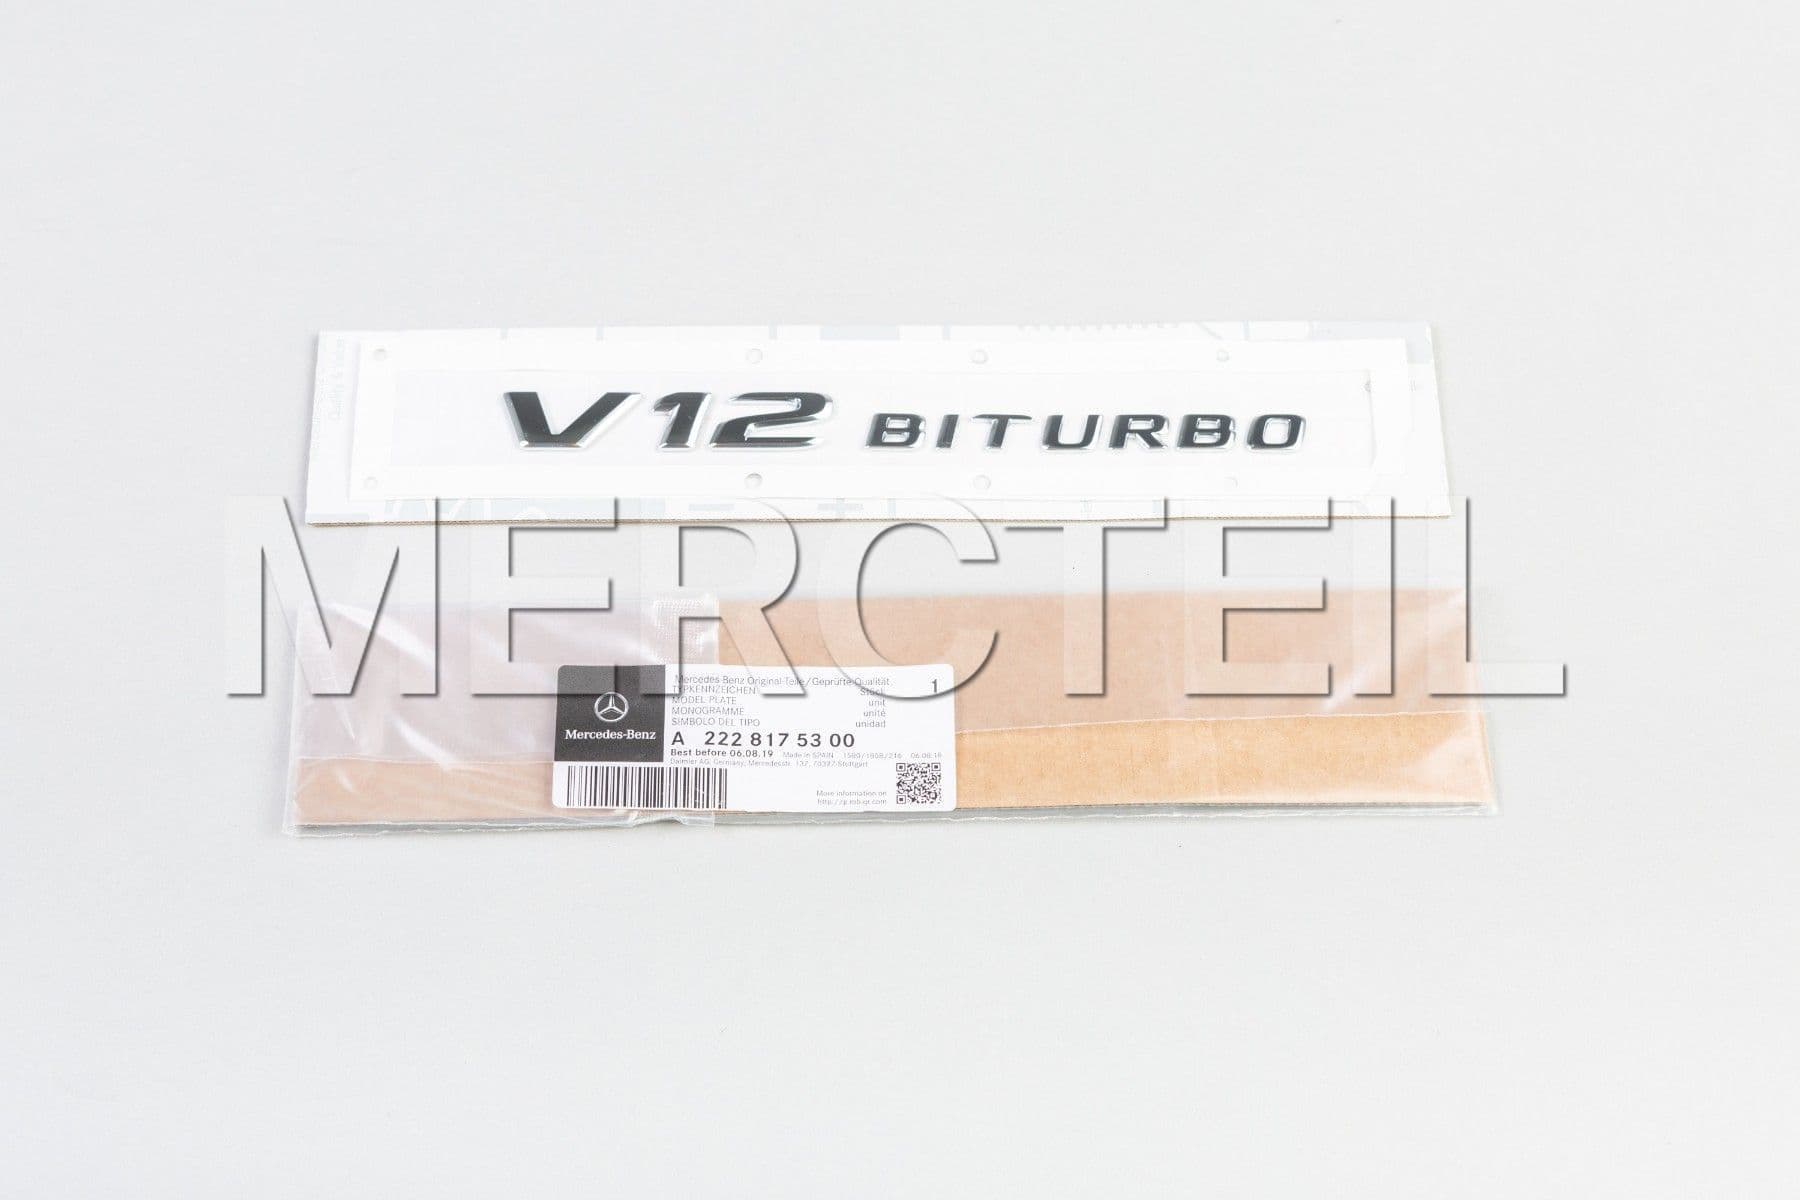 S65 AMG V12 BiTurbo Decal Genuine Mercedes AMG (part number: A2228175300)